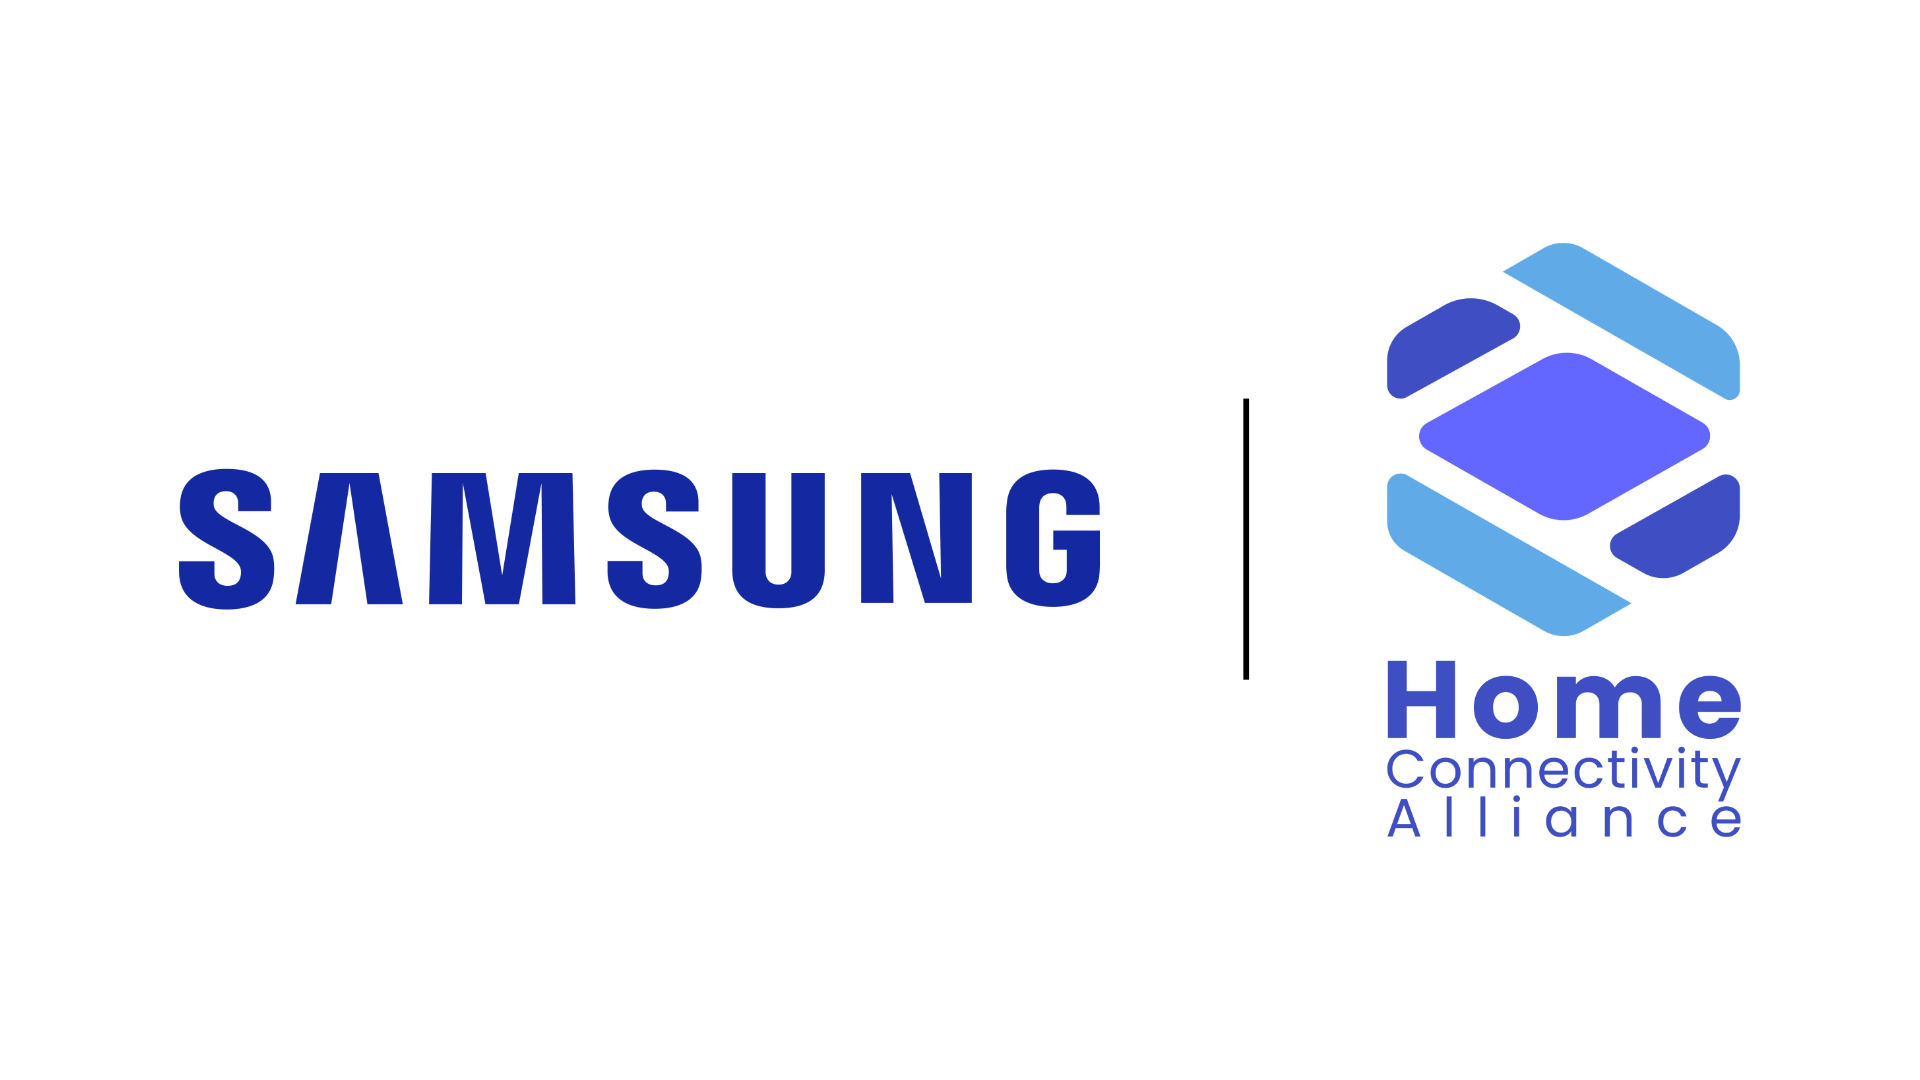 samsung smart home logo